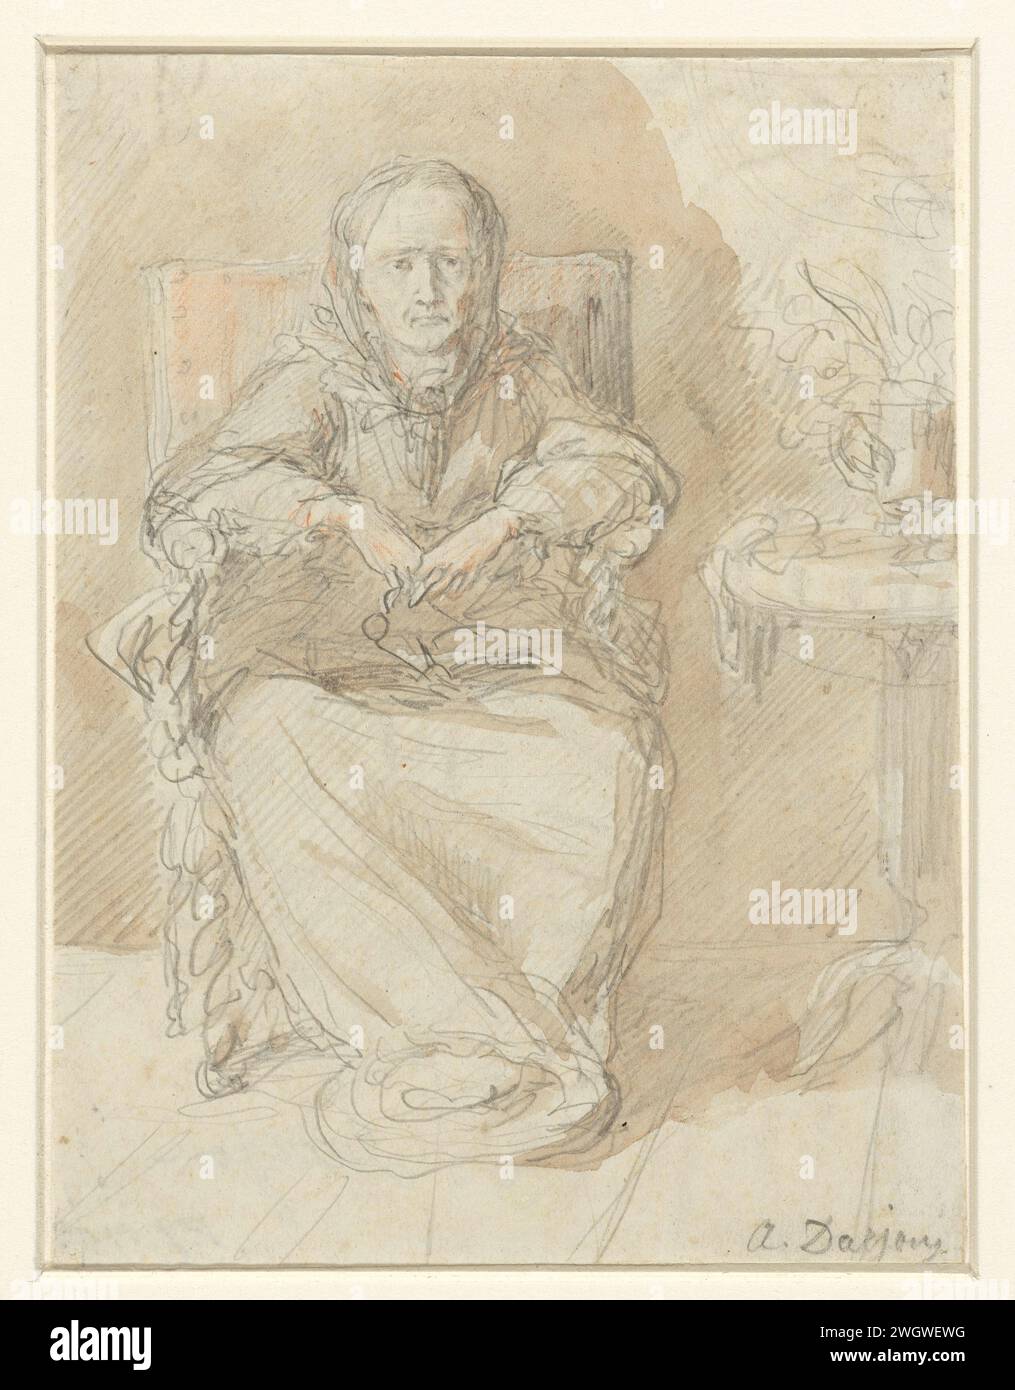 Seduto signora anziana accanto a un tavolo, Alfred Darjou, 1842 - 1874 disegnando una vecchia signora seduta, con un tavolo accanto a se stesso un vaso di fiori. carta. matita. gesso spazzolare vecchia donna. Figura seduta - AA - figura umana femminile Foto Stock